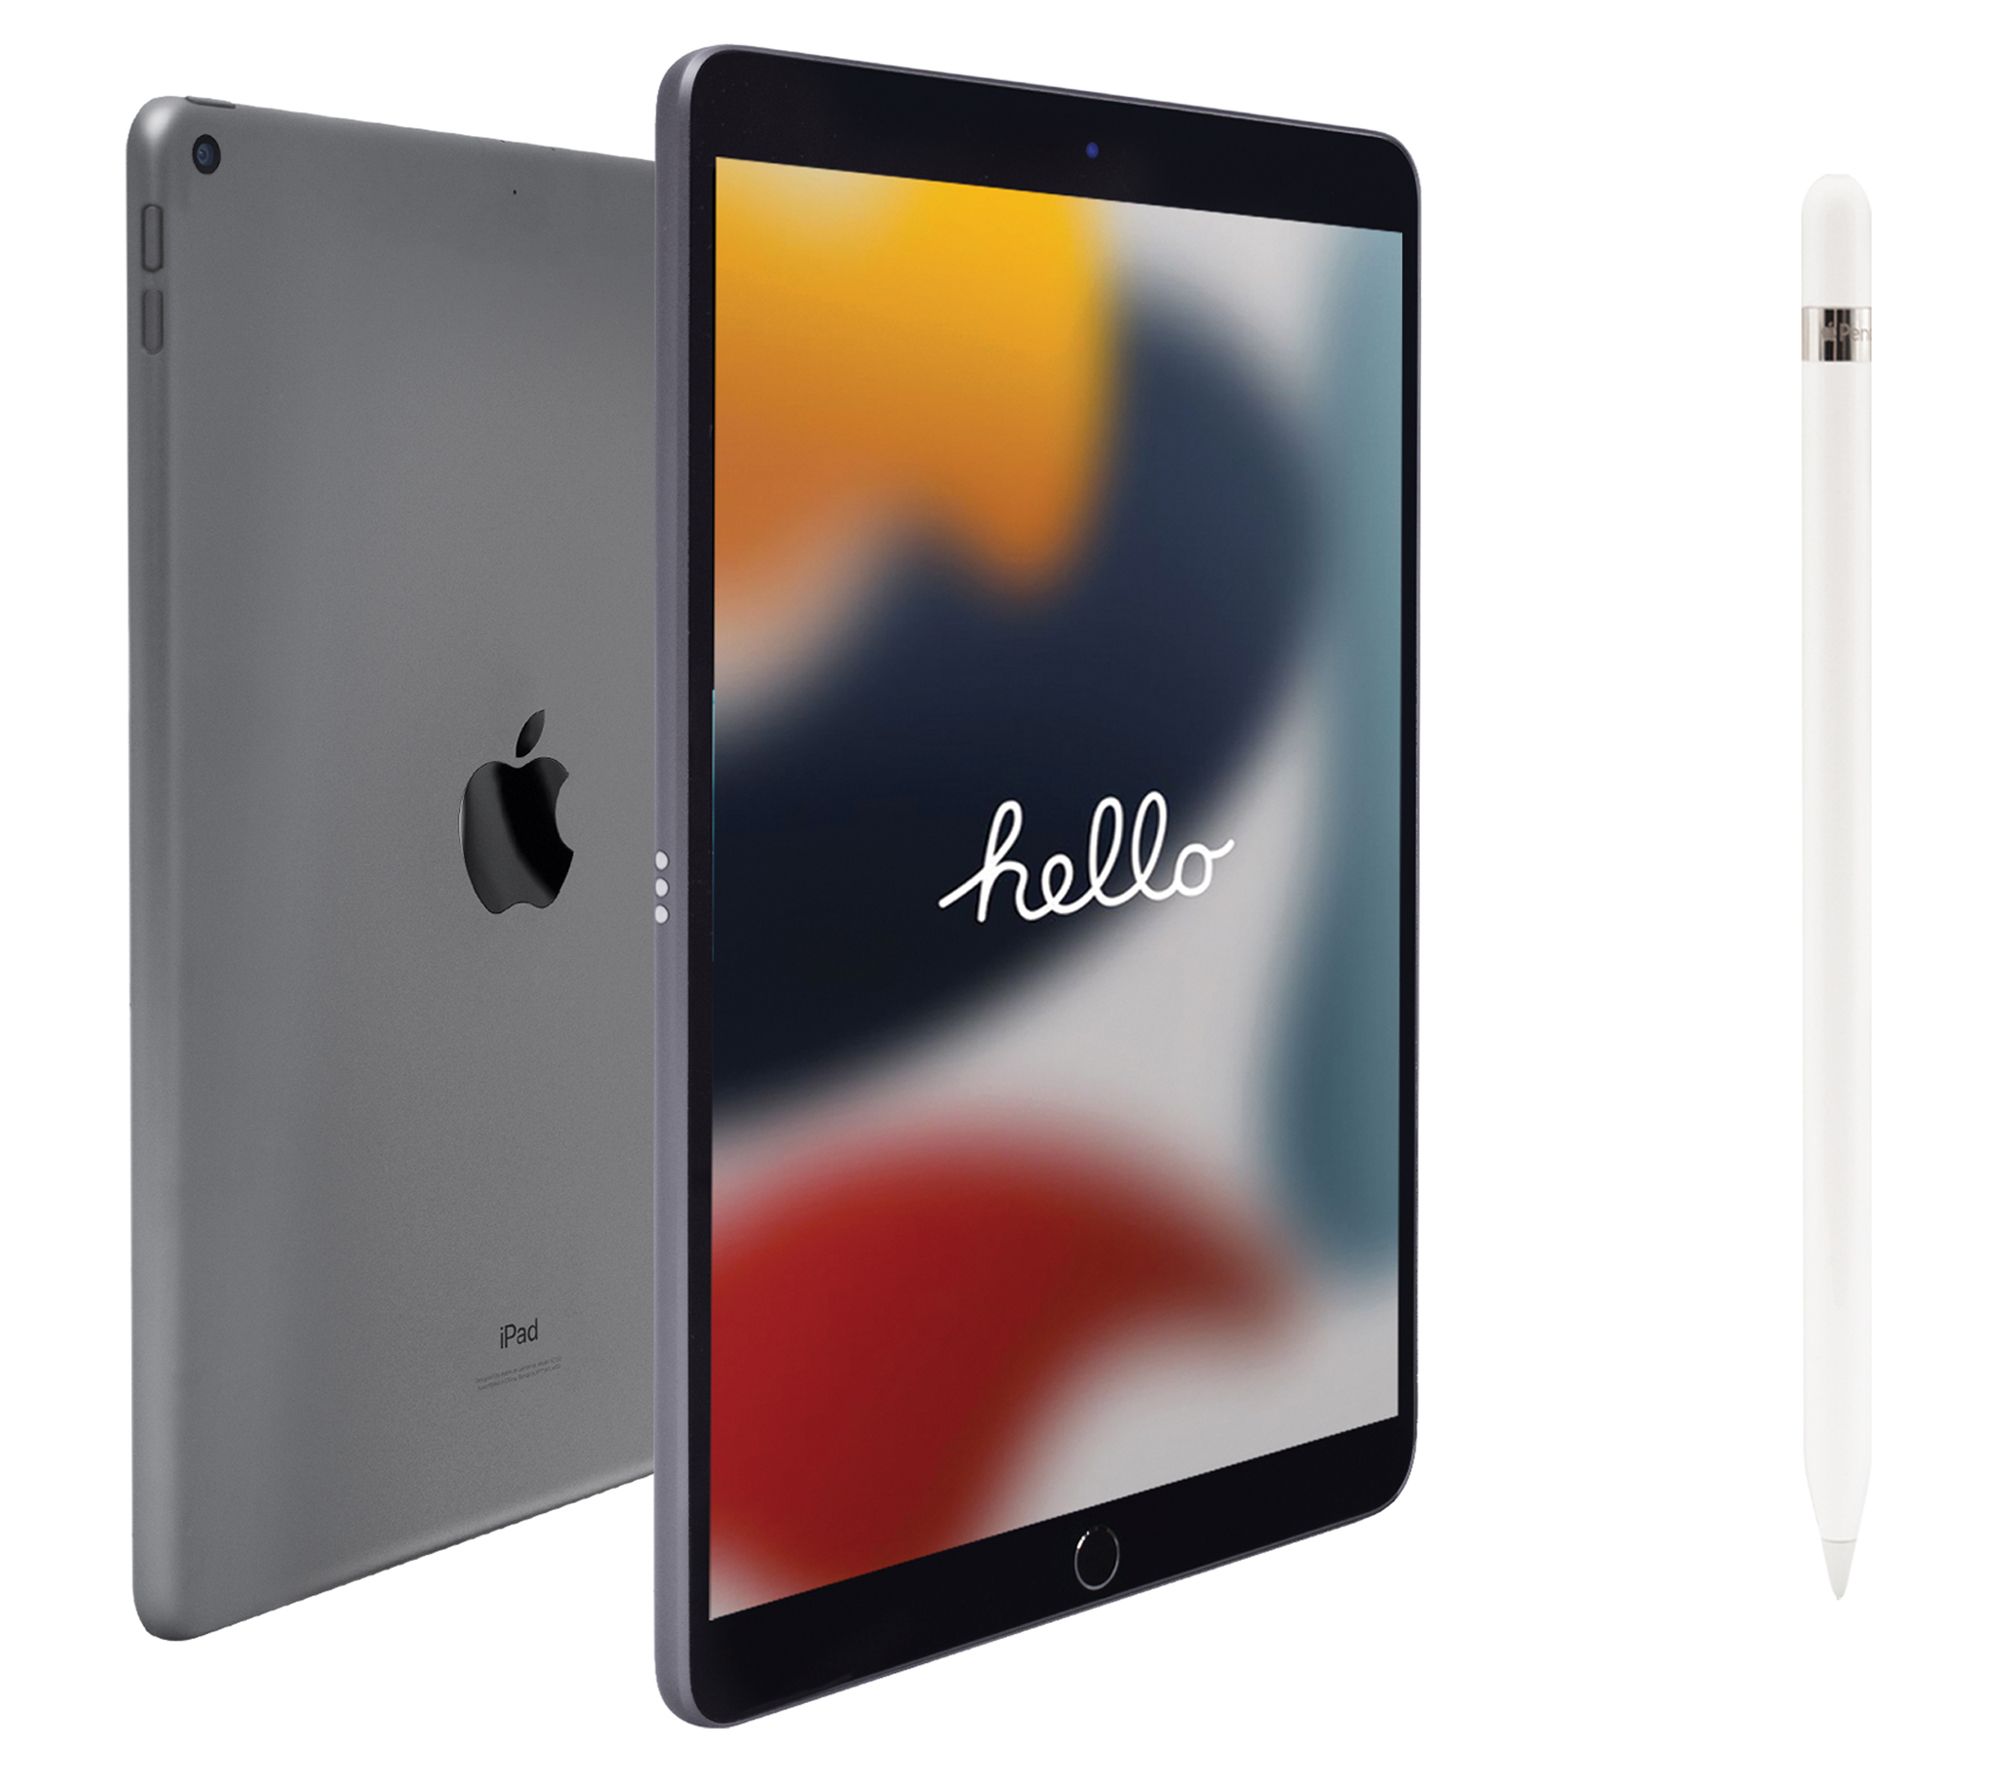 iPad 10.2 (2021) 256GB - Silver - (WiFi)